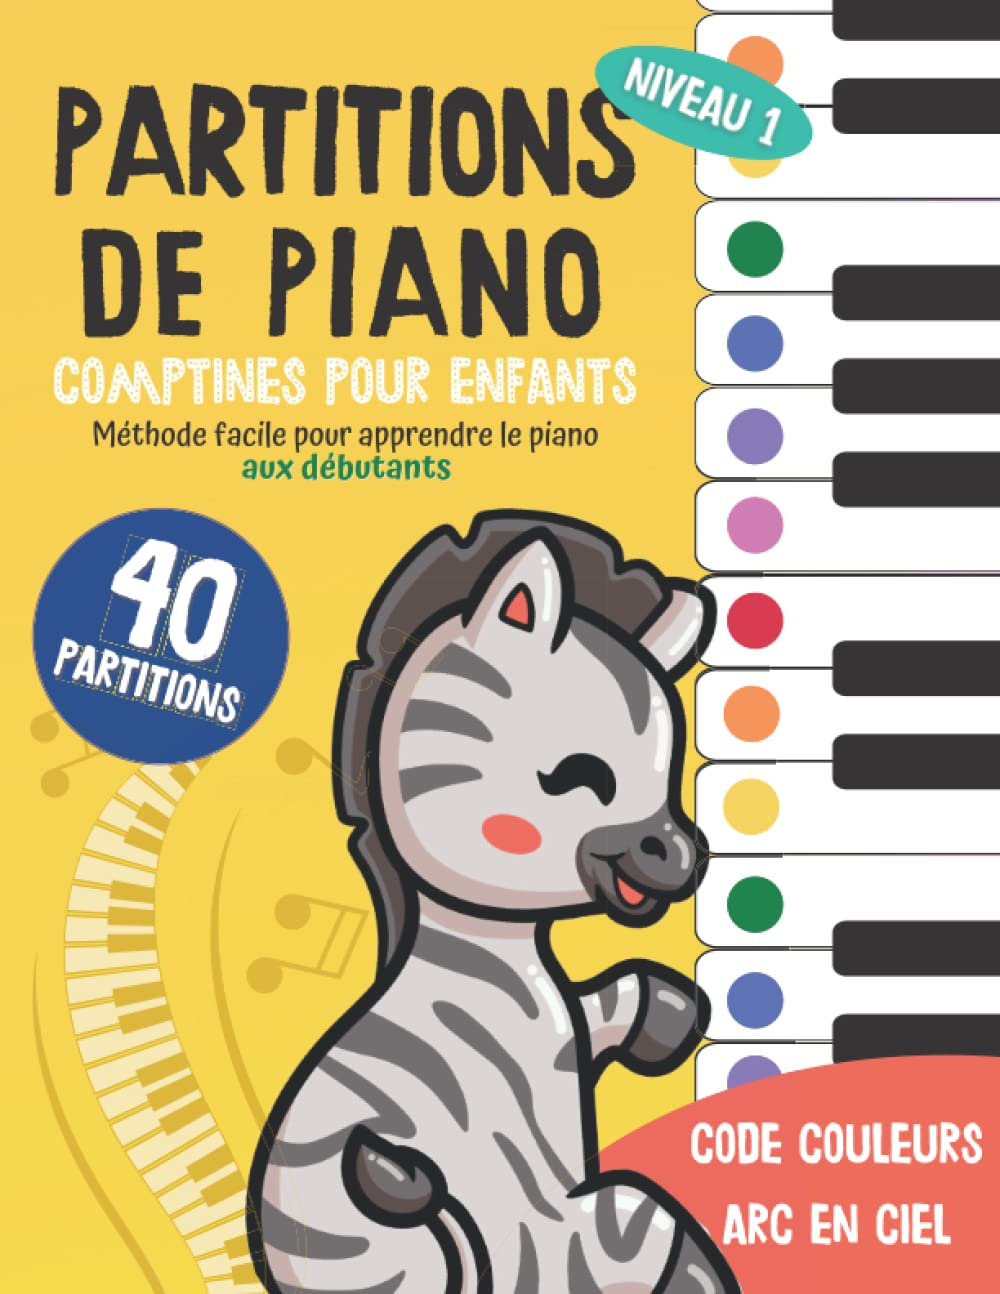 40 Partitions de piano: Comptines pour enfants: Méthode facile pour apprendre le piano aux débutants